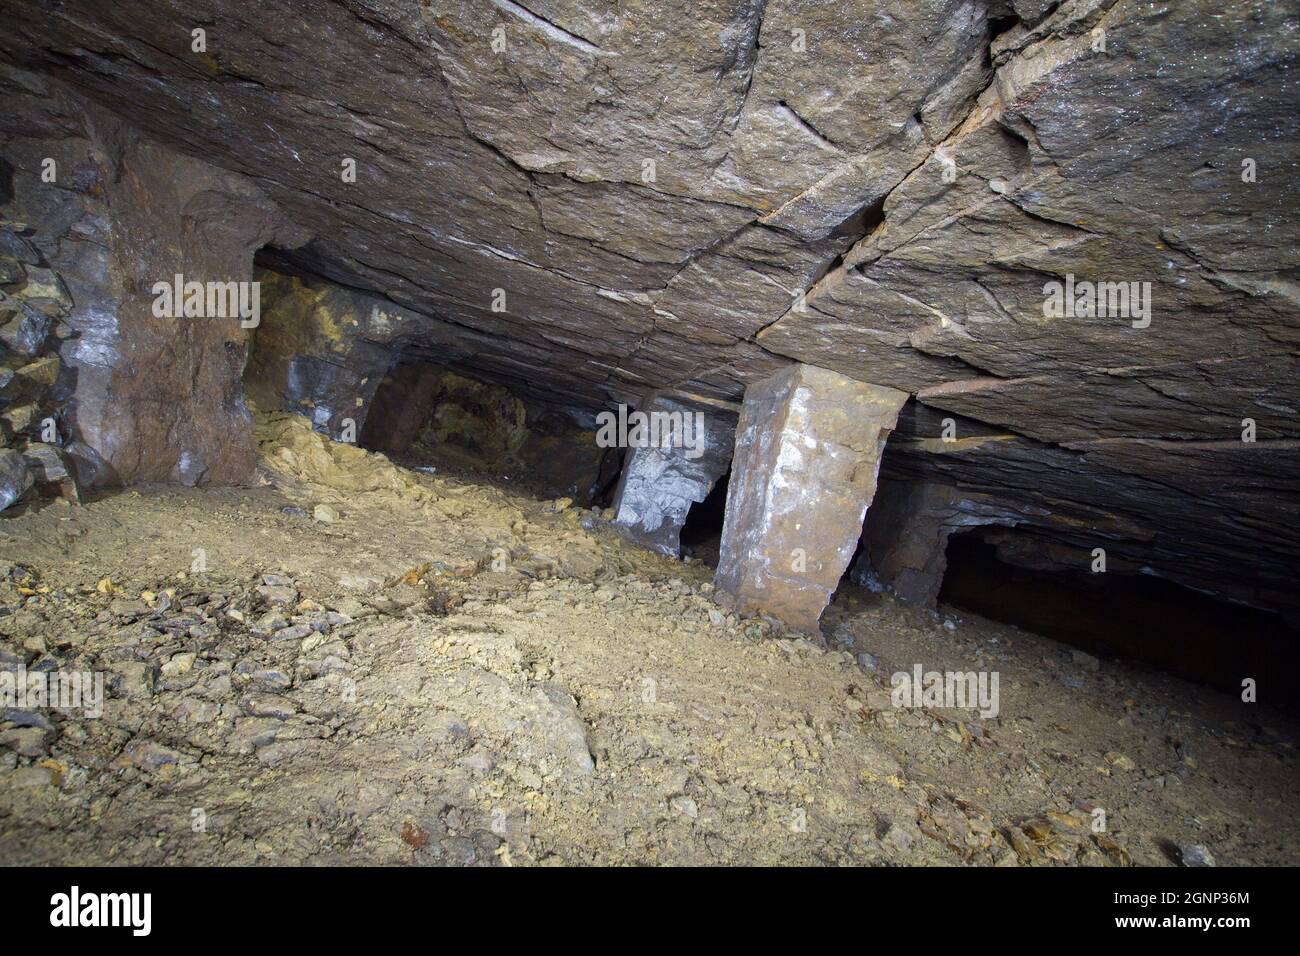 Intérieur de la mine de minerai de fer 'Kristian', Bohême de l'Ouest.Chambre inclinée dans la zone du gisement, avec piliers de pierre de support. Banque D'Images